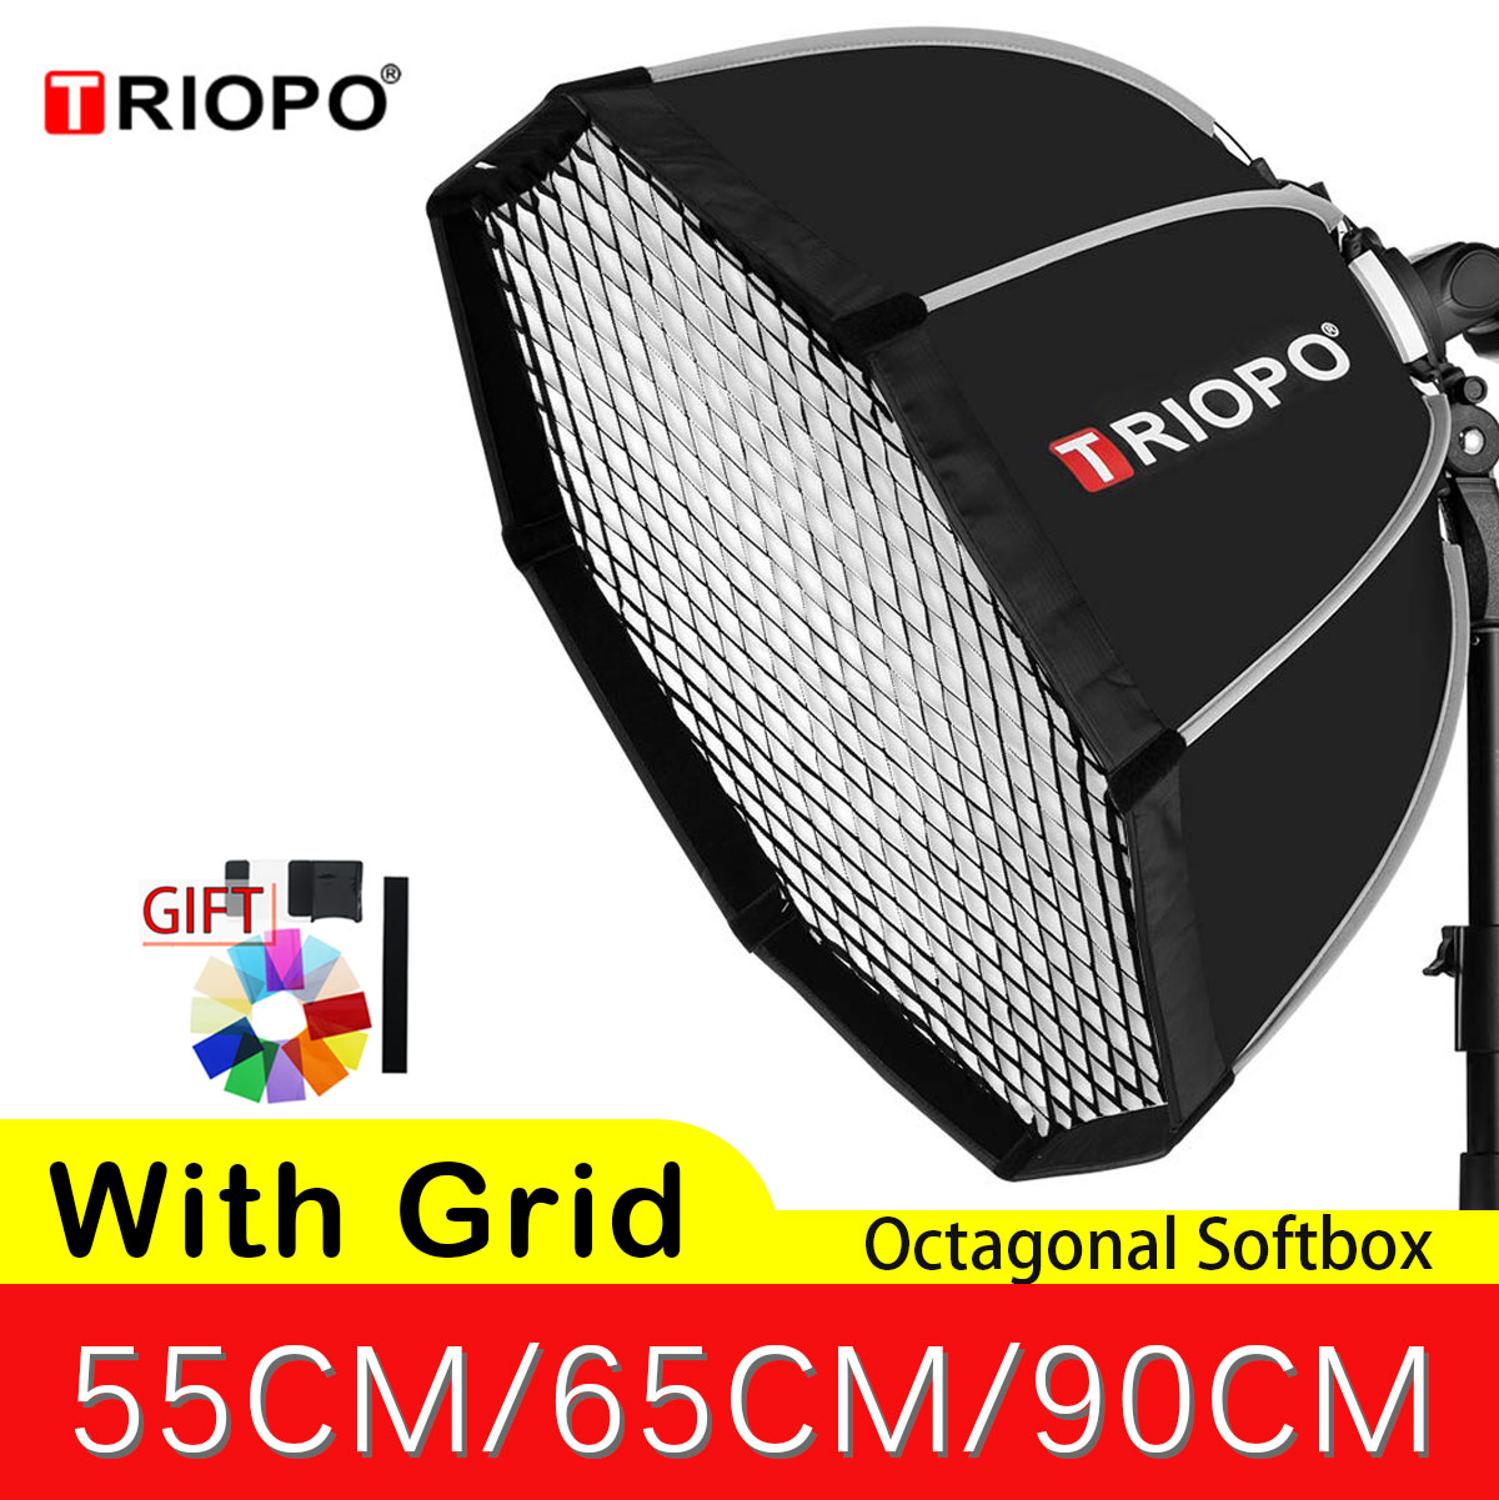 Triopo 55 Cm 65 Cm 90 Cm Octagon Softbox Met Gird Andle Paraplu Voor Godox Camare Flash Speedlite Fotografie Studio accessoires